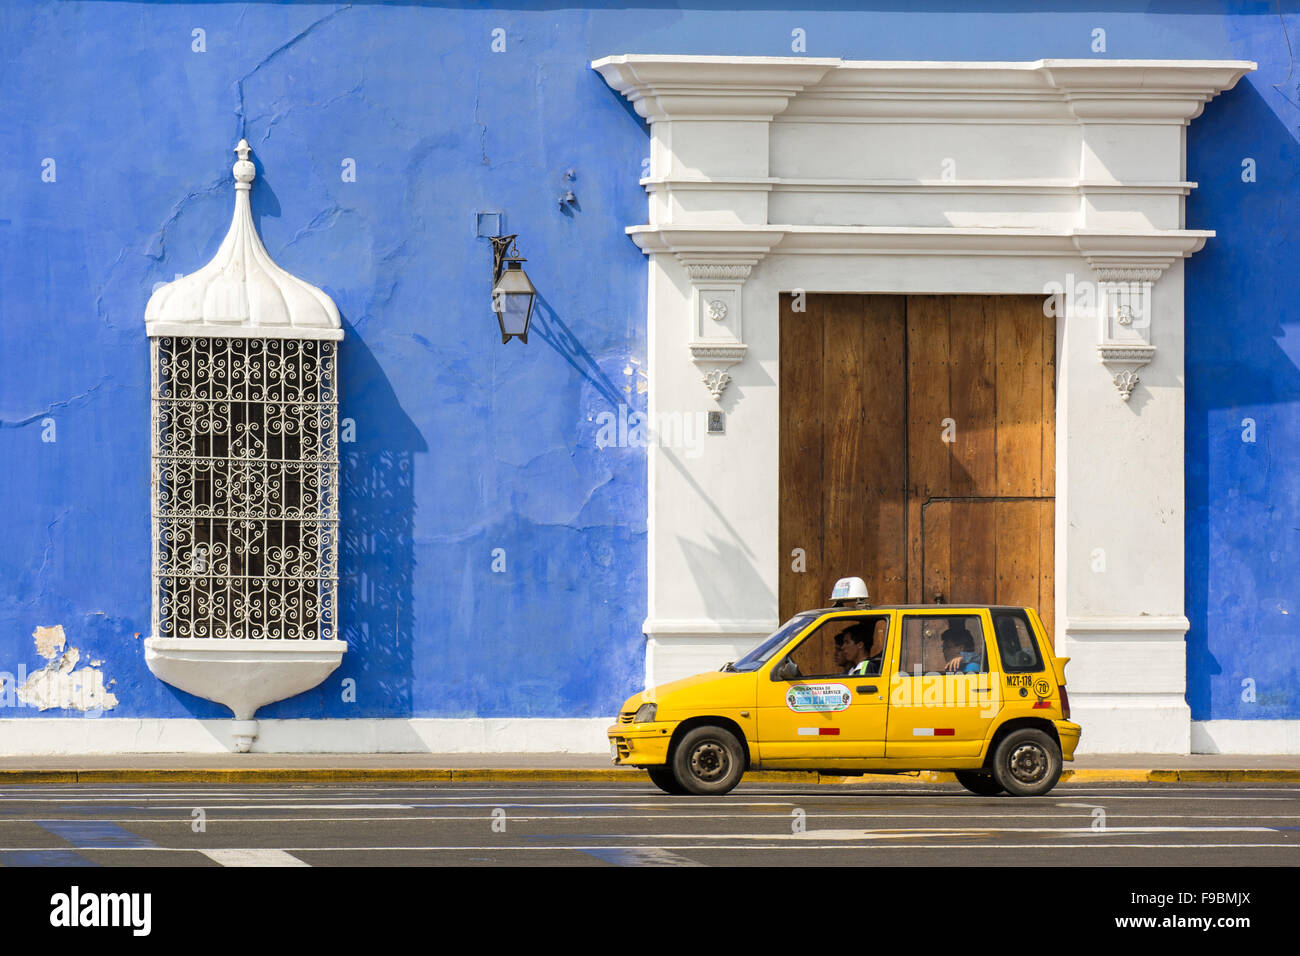 Typique petit taxi jaune contre bâtiment de style colonial dans la place principale de Trujillo, ville du nord du Pérou Banque D'Images